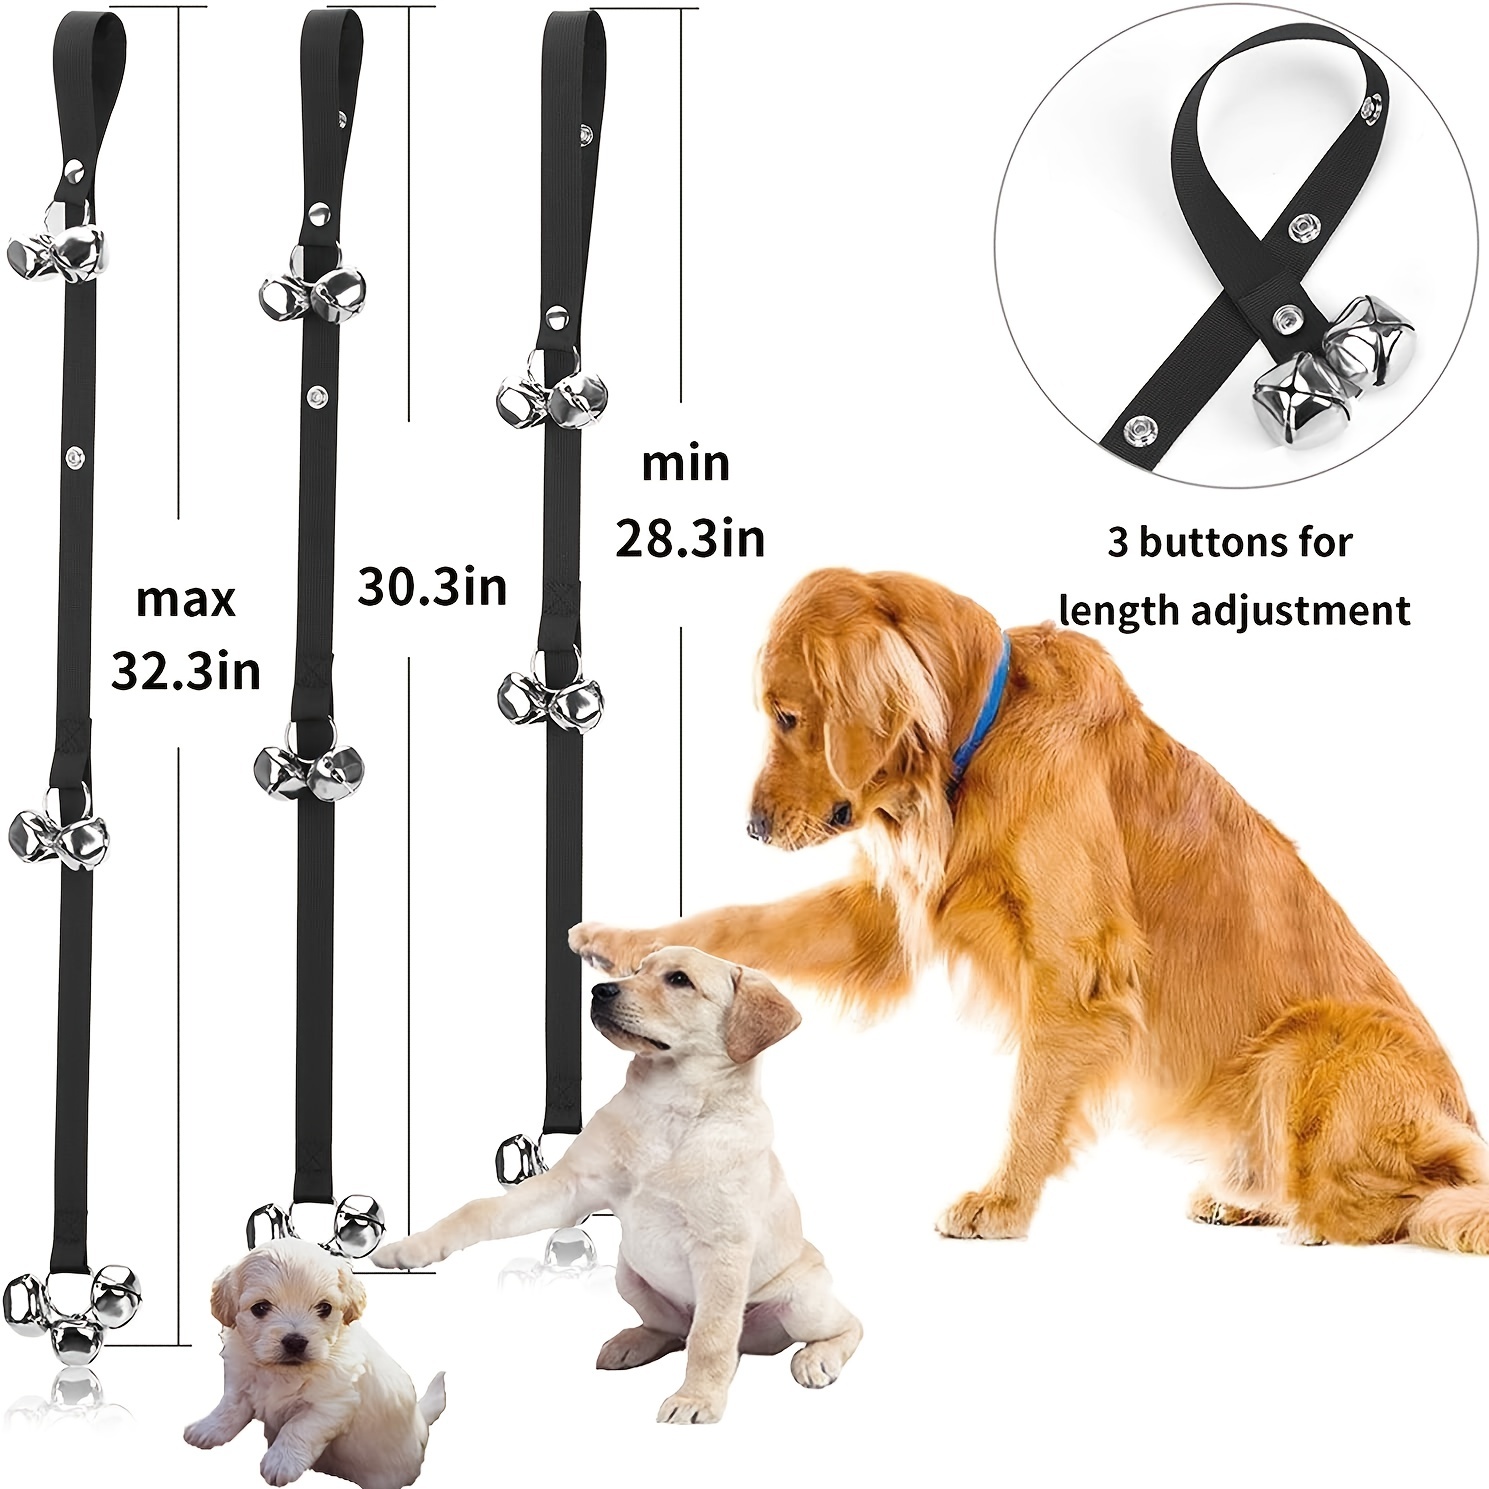 Buy Dog Doorbells: Puppy Bells For Dog Training & Adjustable Door Bells